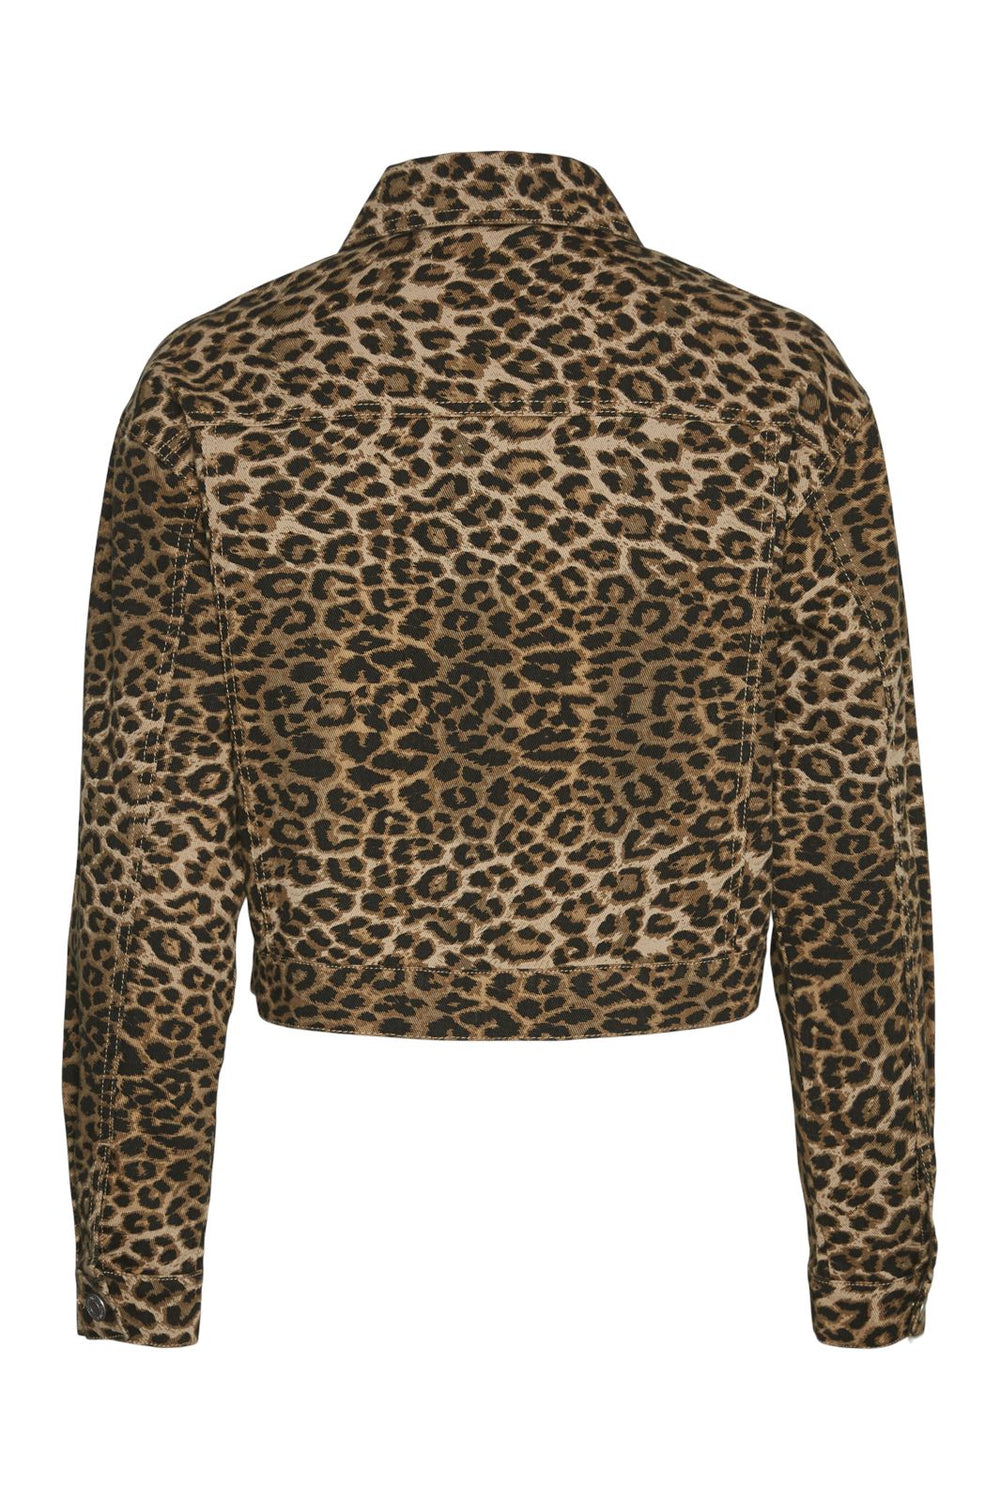 Vero Moda - Vmltallulah Ls Leo Jacket - 4672802 Silver Mink Leopard